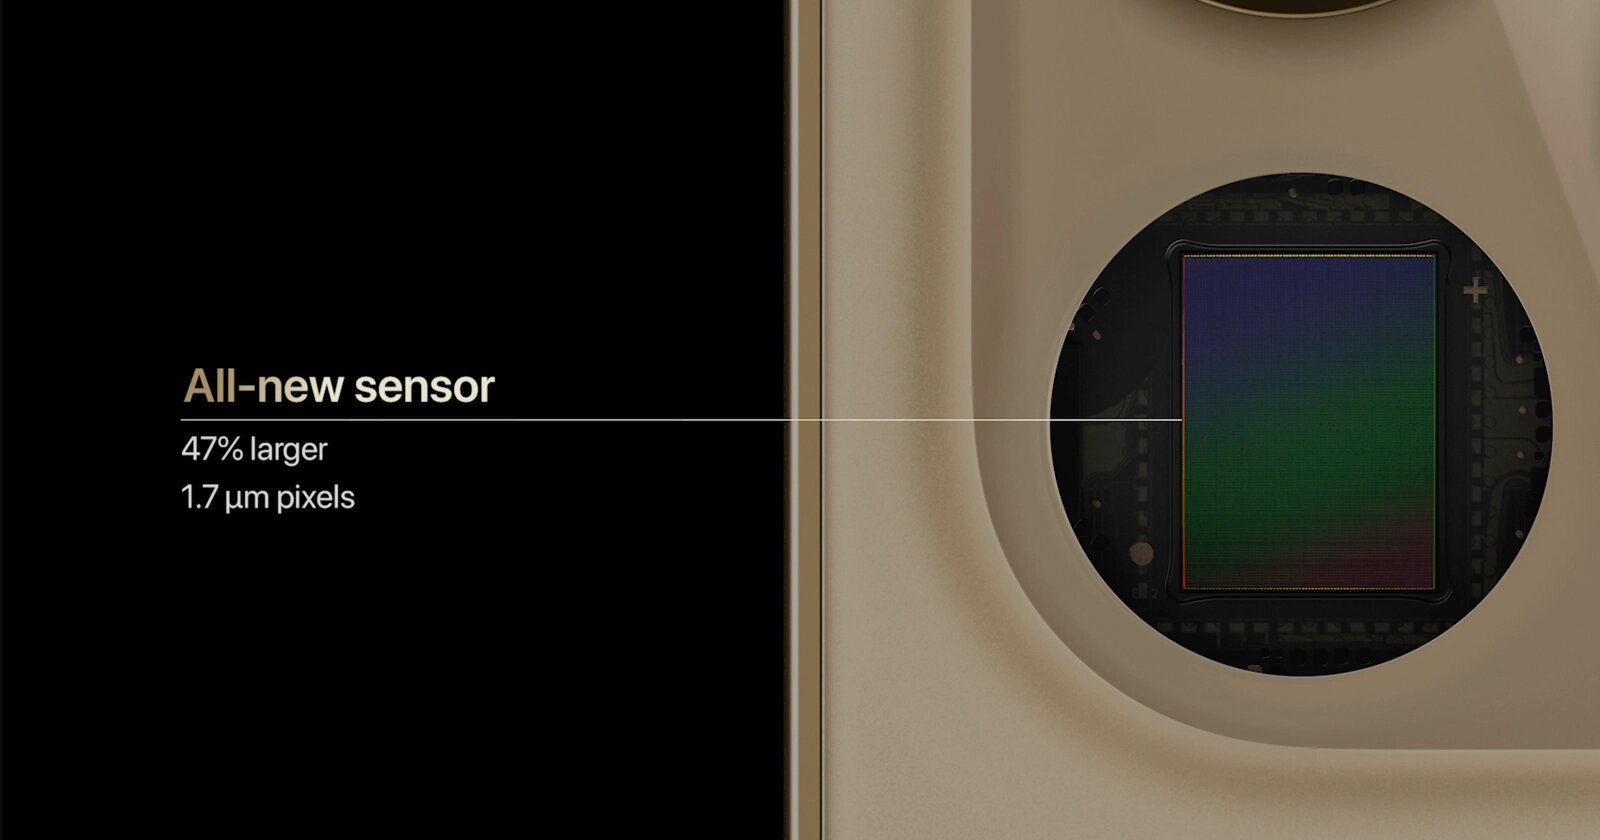 Chi tiết về camera và cảm biến trên iPhone 12 Pro Max